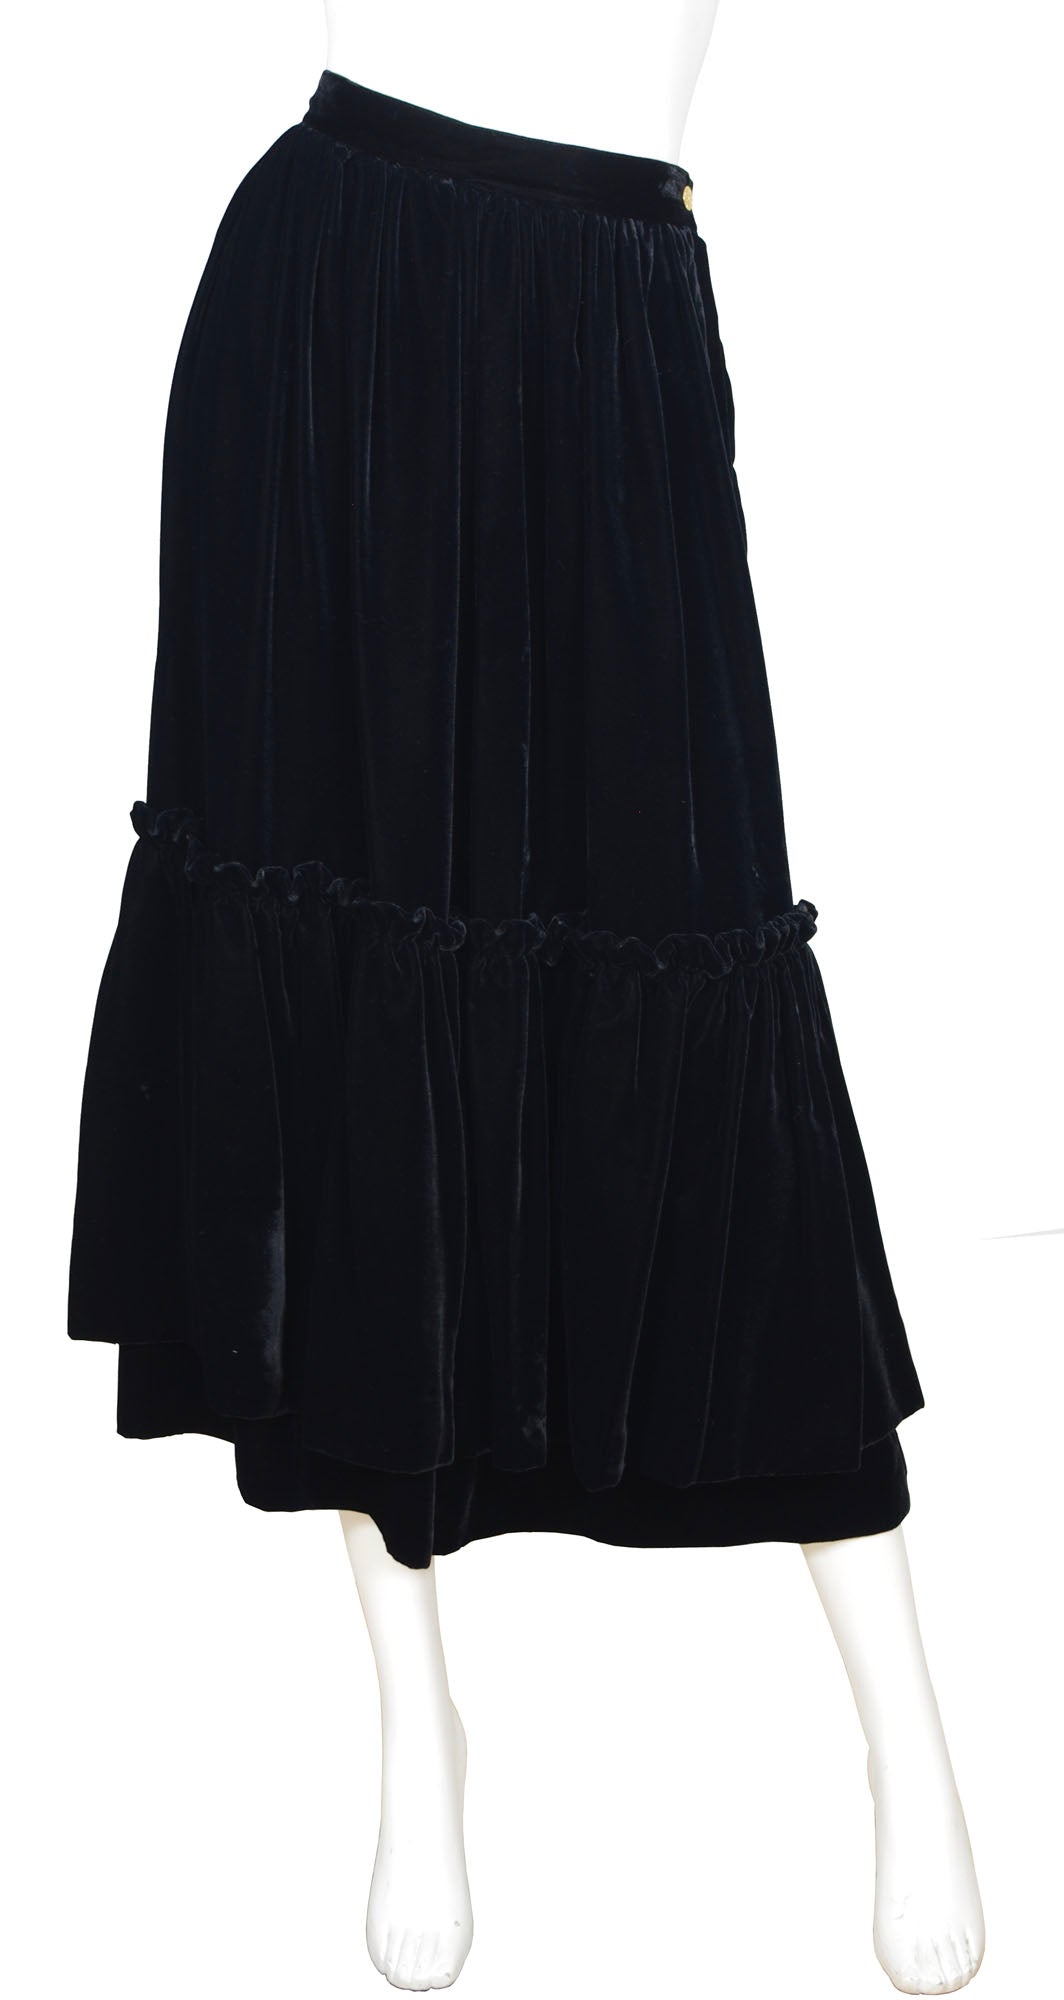 black velvet skirt midi